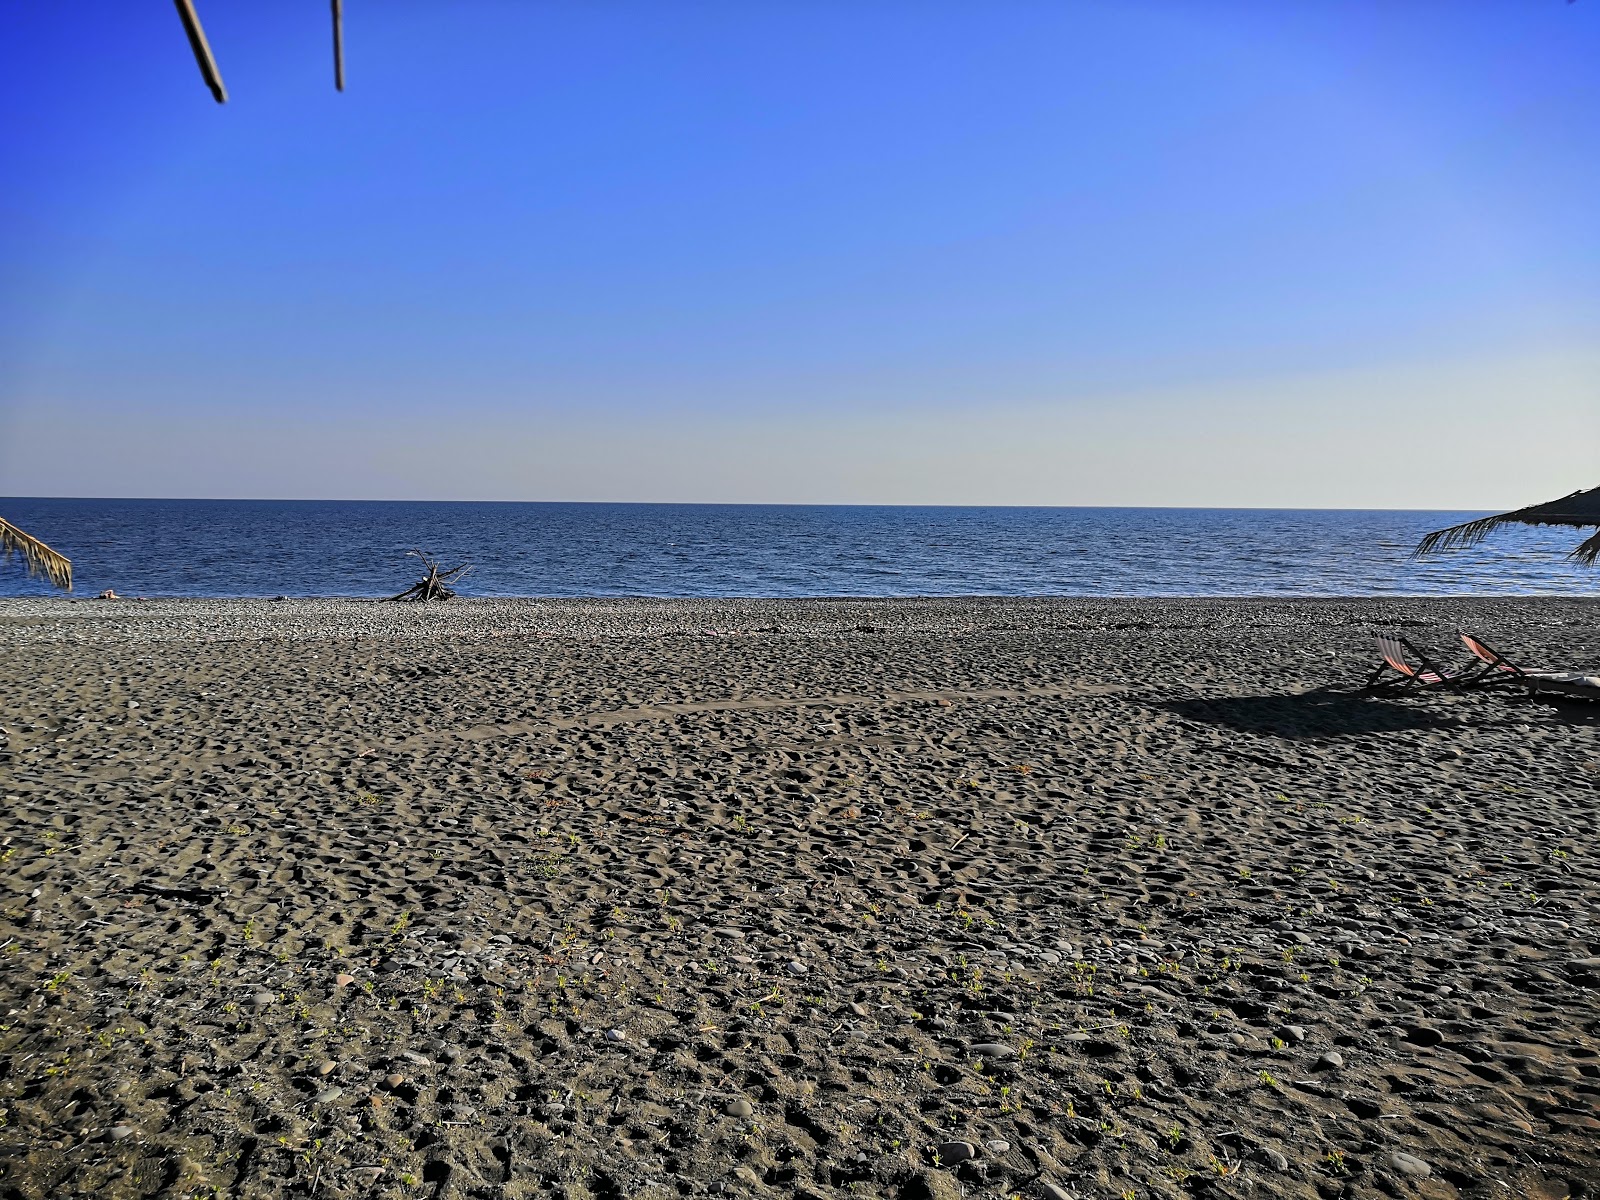 Zdjęcie Skurcha beach z poziomem czystości niski